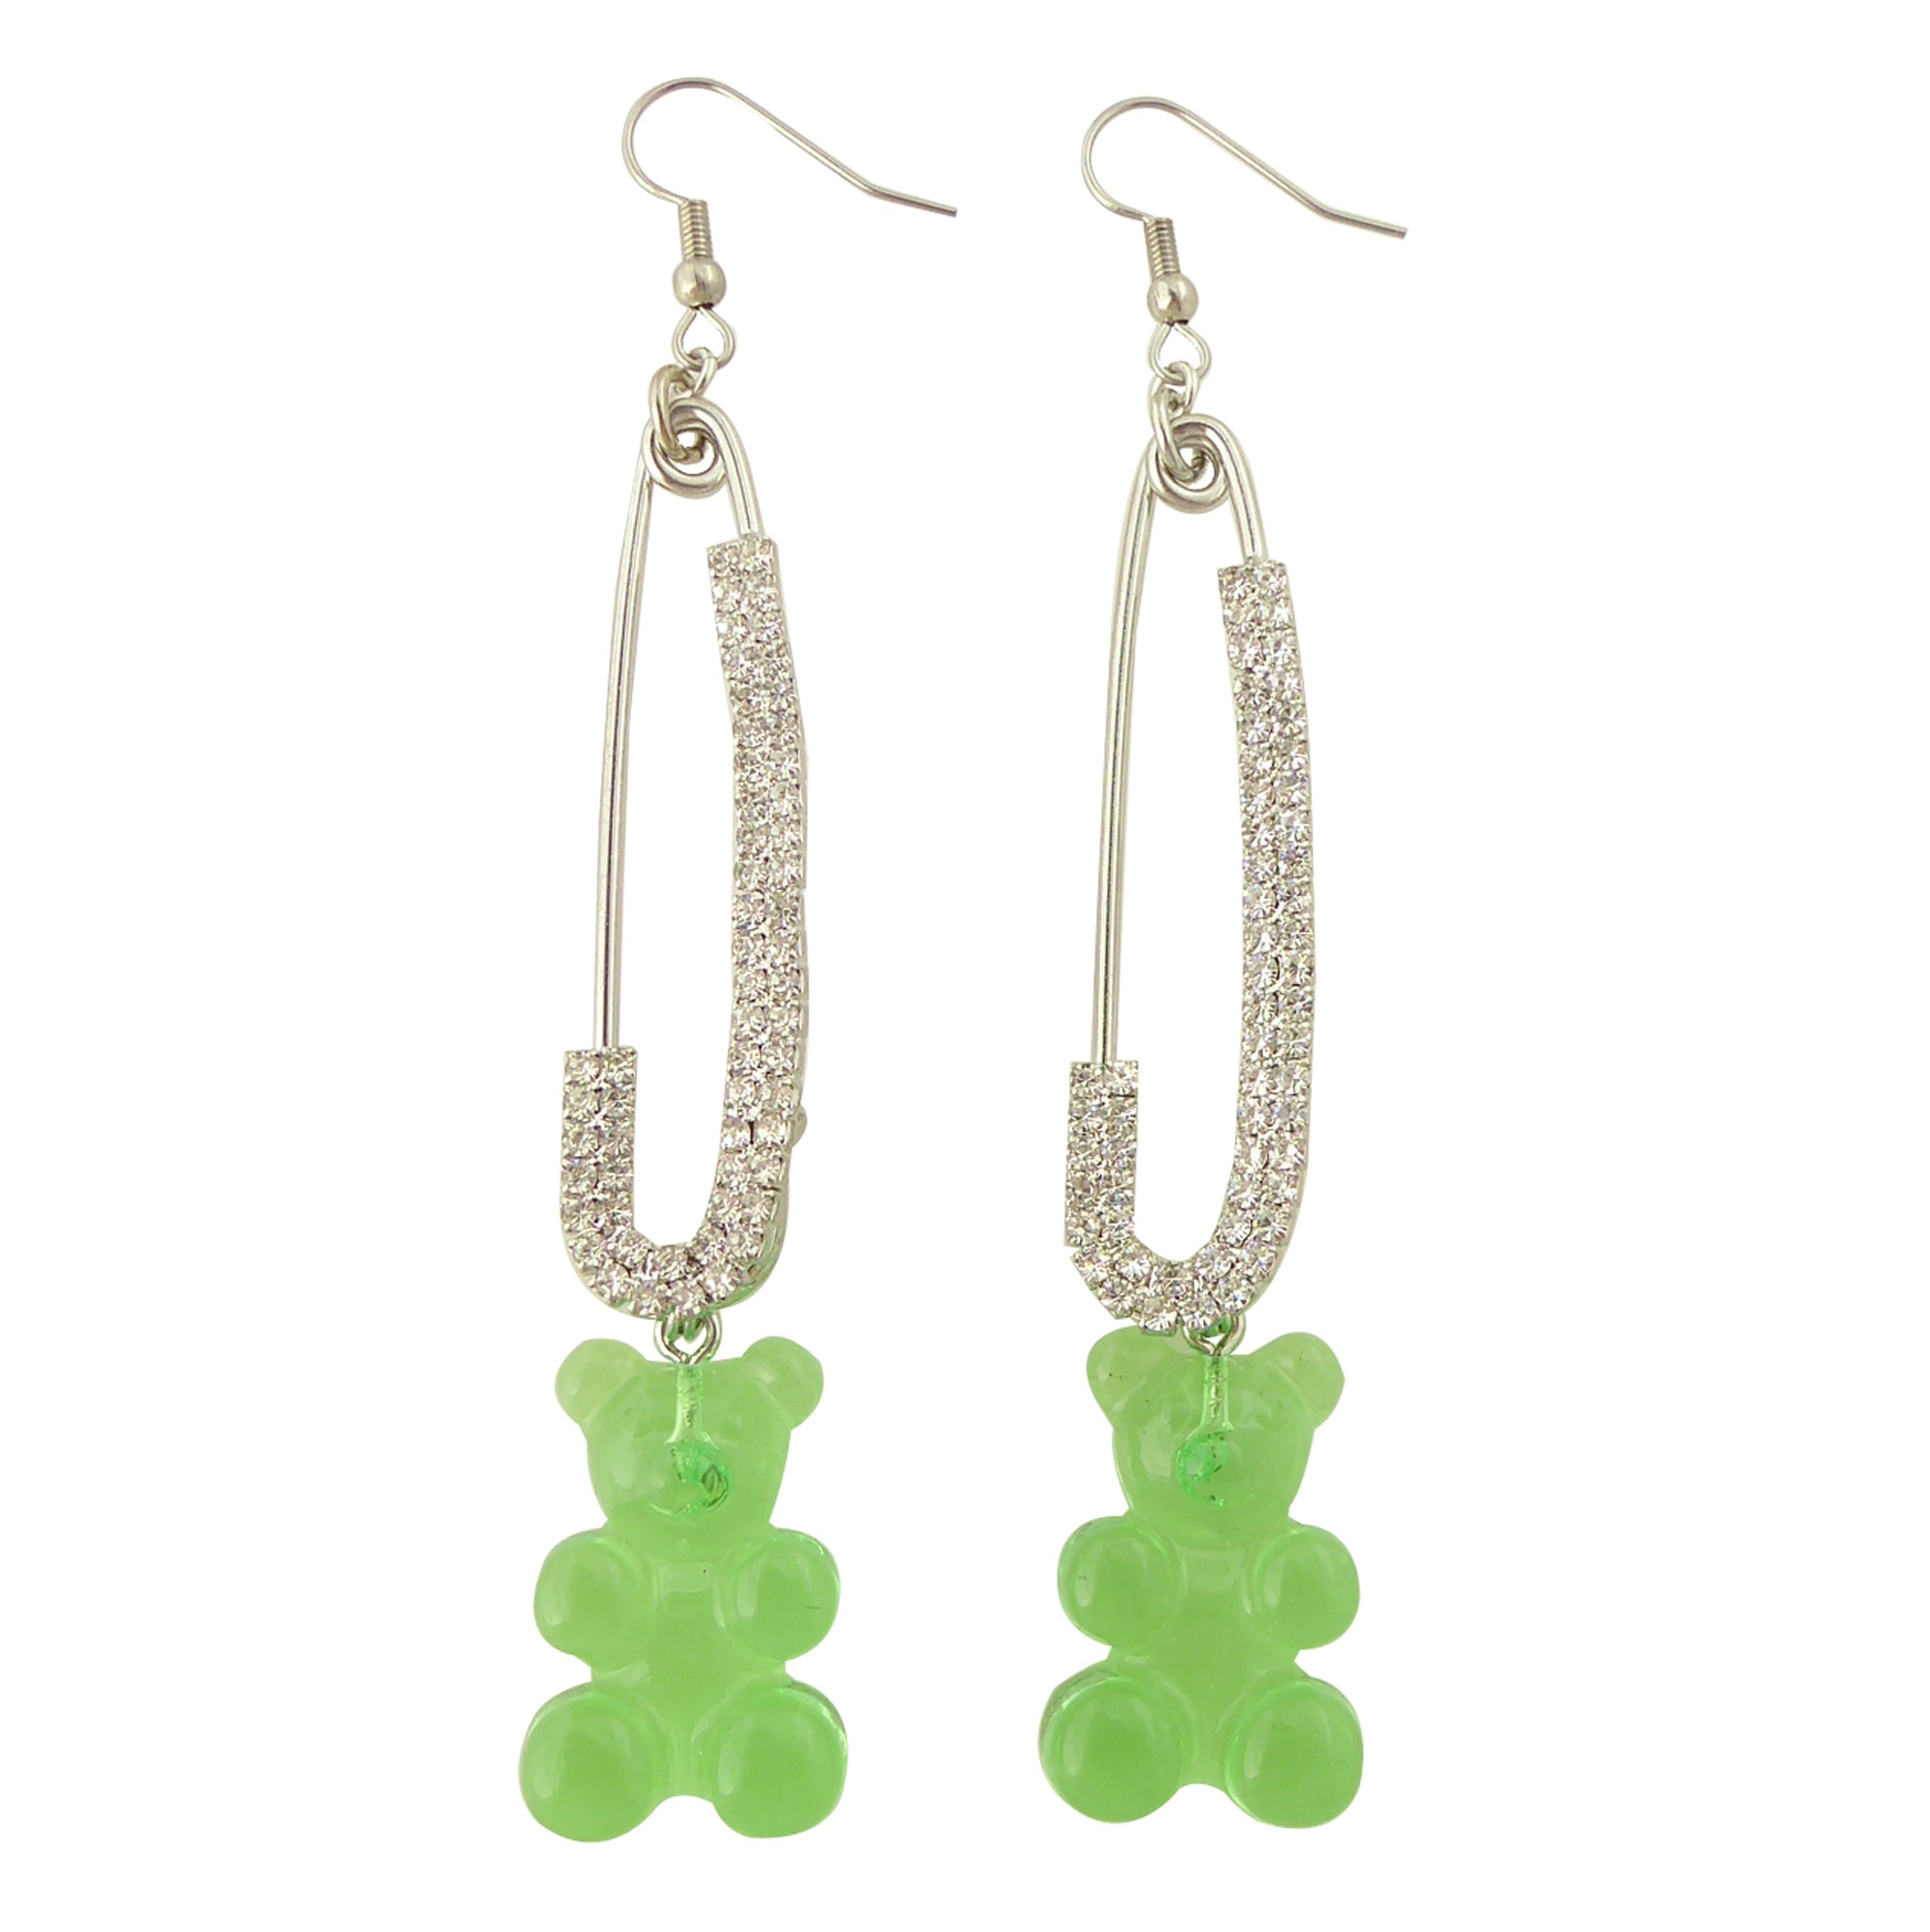    Green gummy bear earrings by Jenny Dayco 1